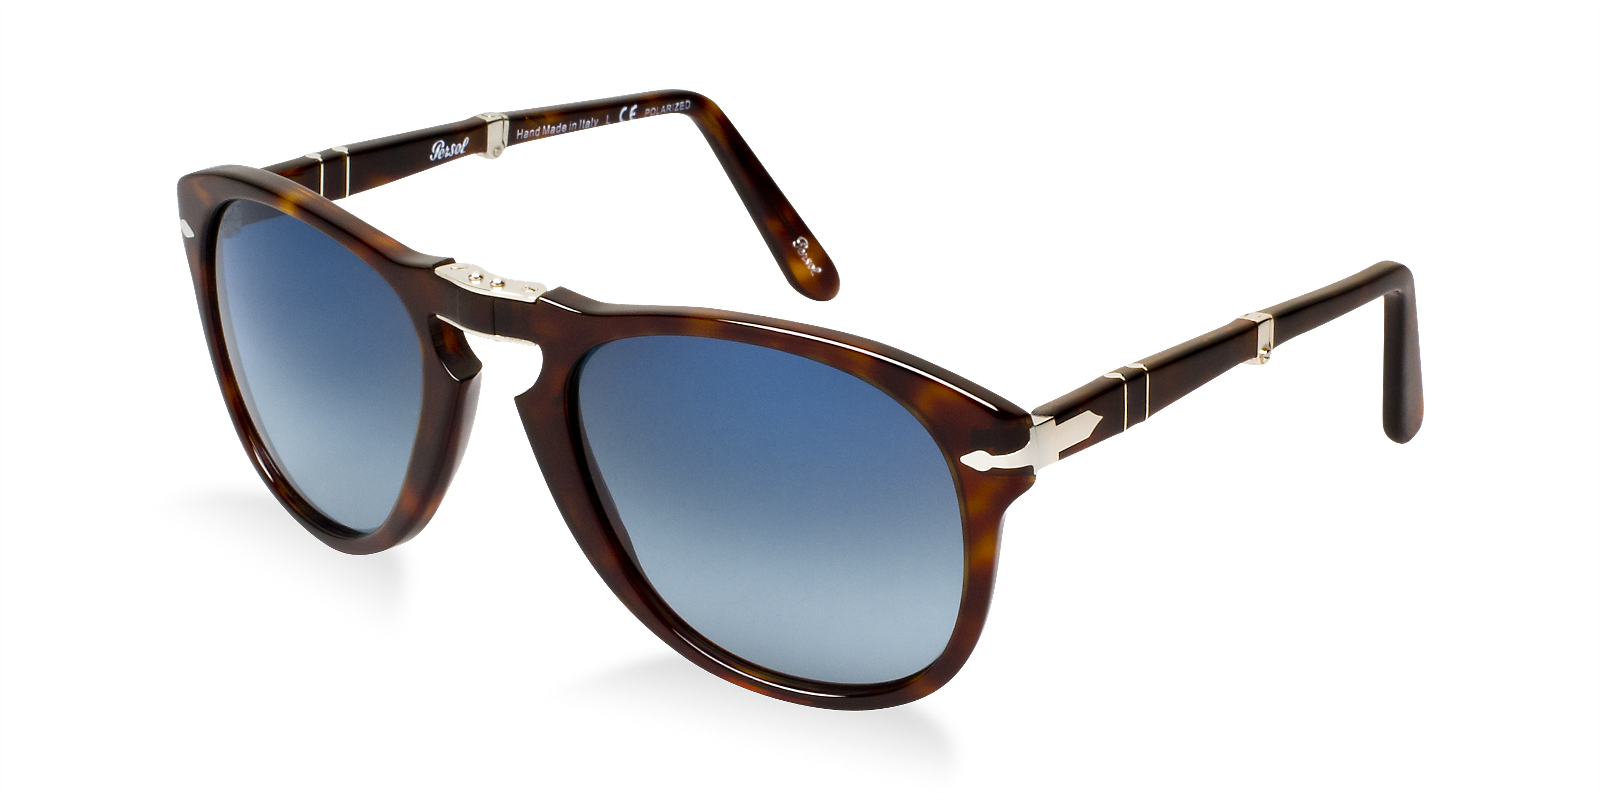 Persol 649 Sunglass Hut - Persol Sunglasses Men (1600x800), Png Download